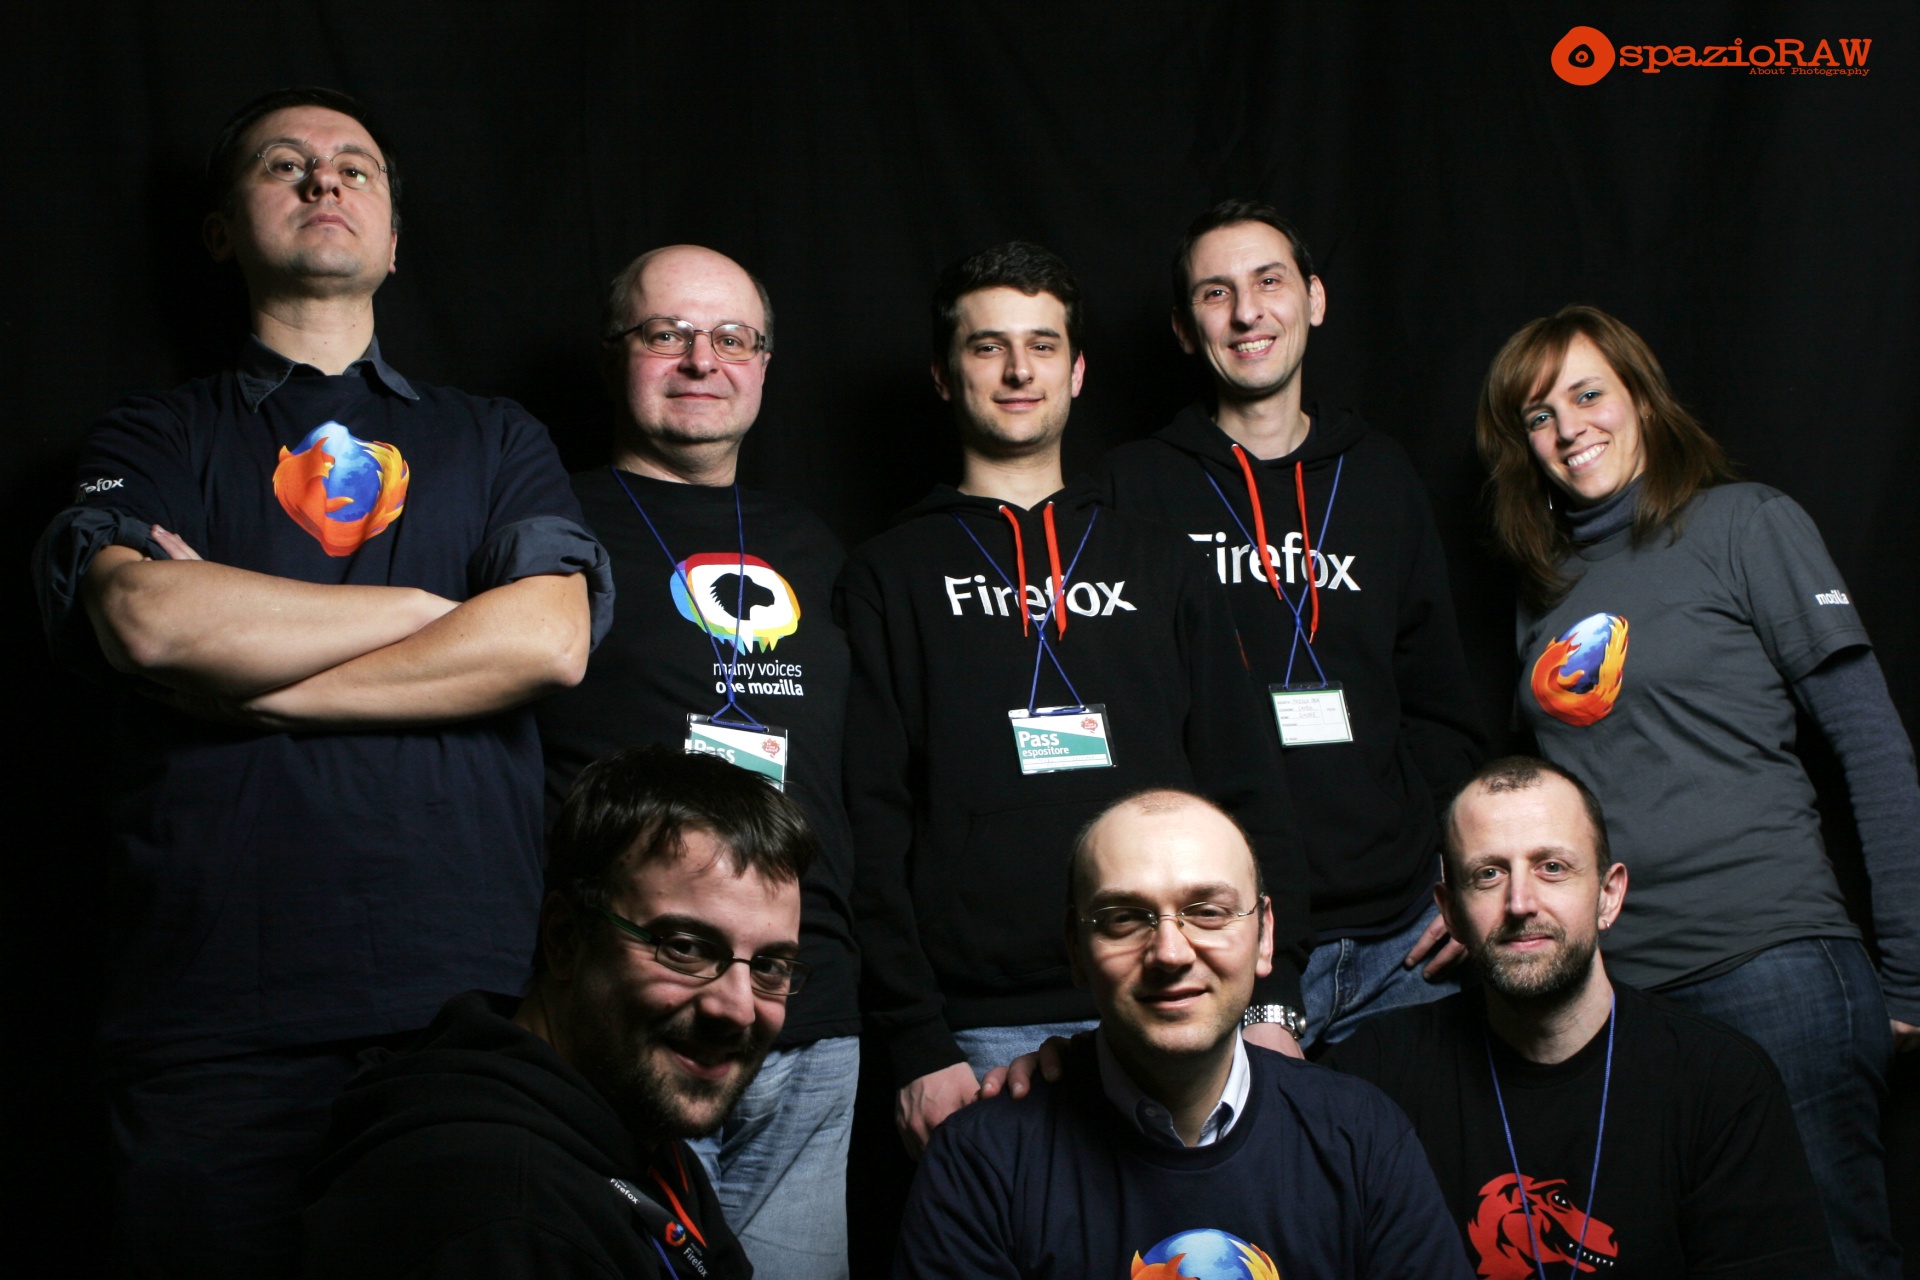 Gruppo Mozilla Italia a Fa La Cosa Giusta 2013, foto di SpazioRAW.it